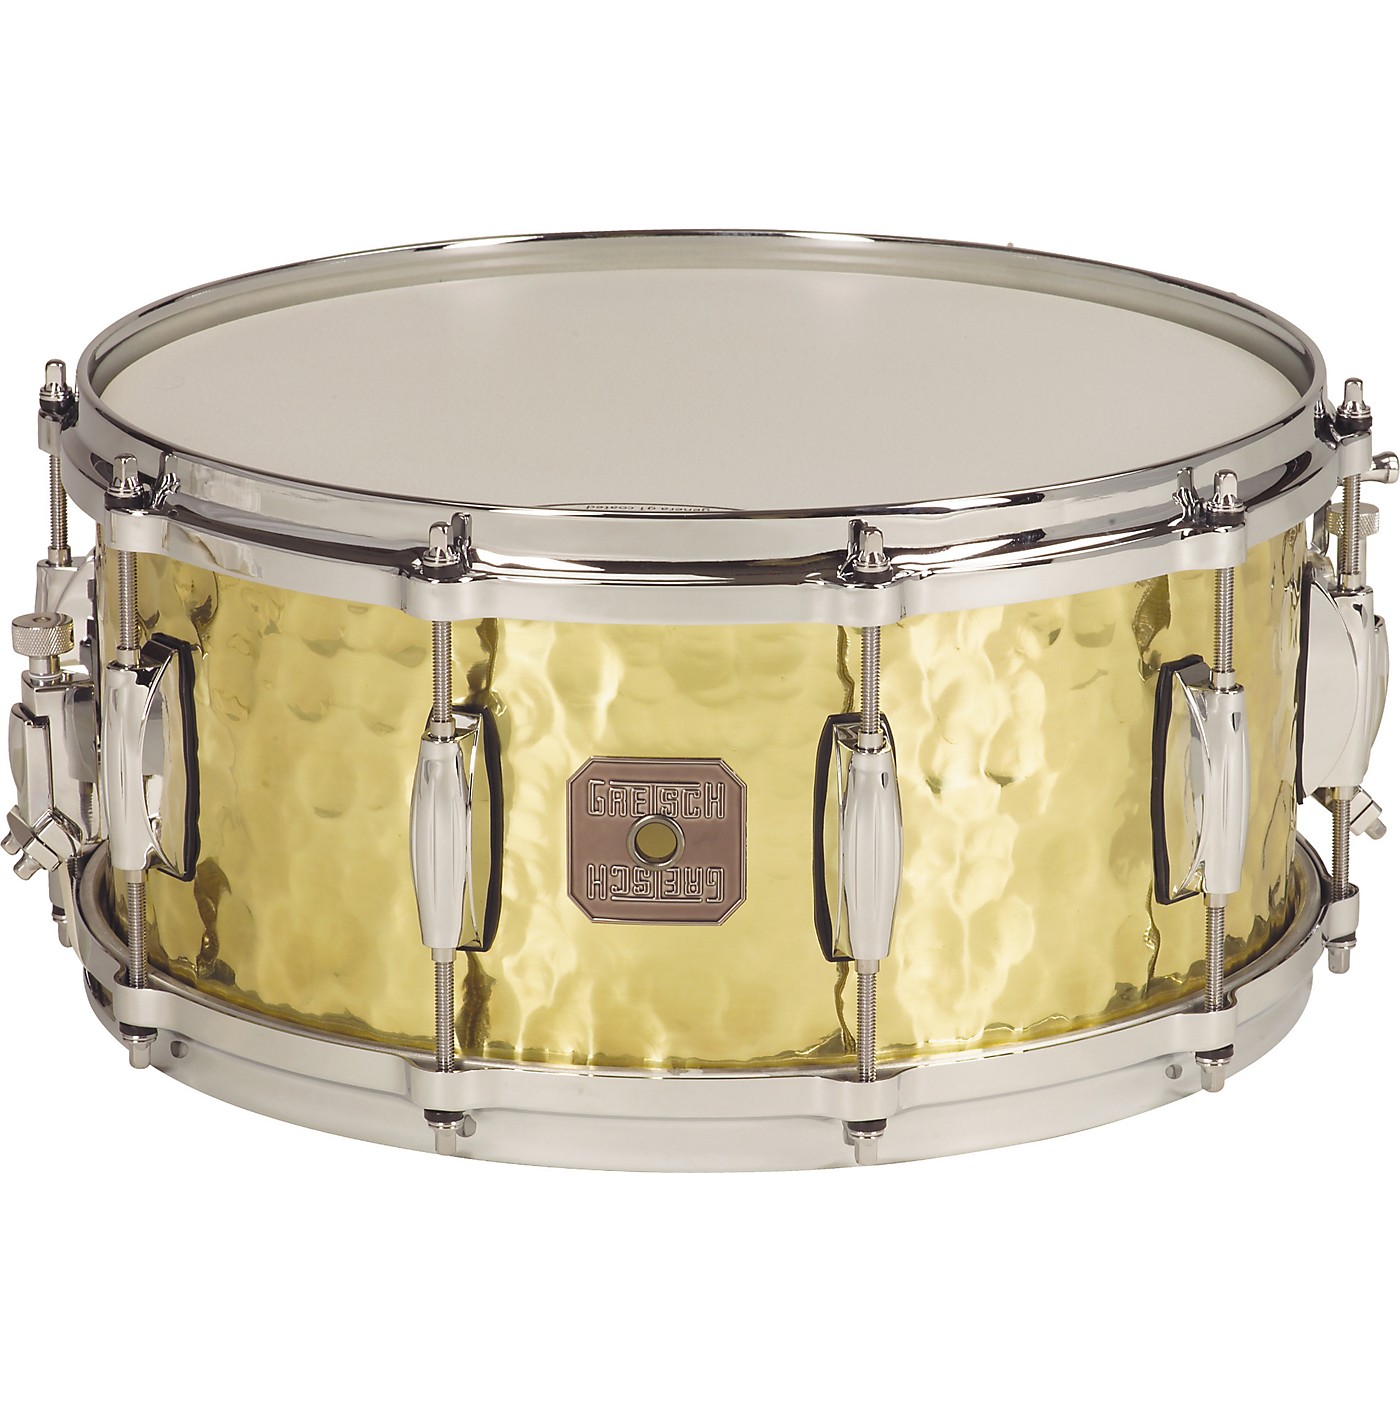 Gretsch Drums Hammered Brass Snare Drum - Woodwind & Brasswind